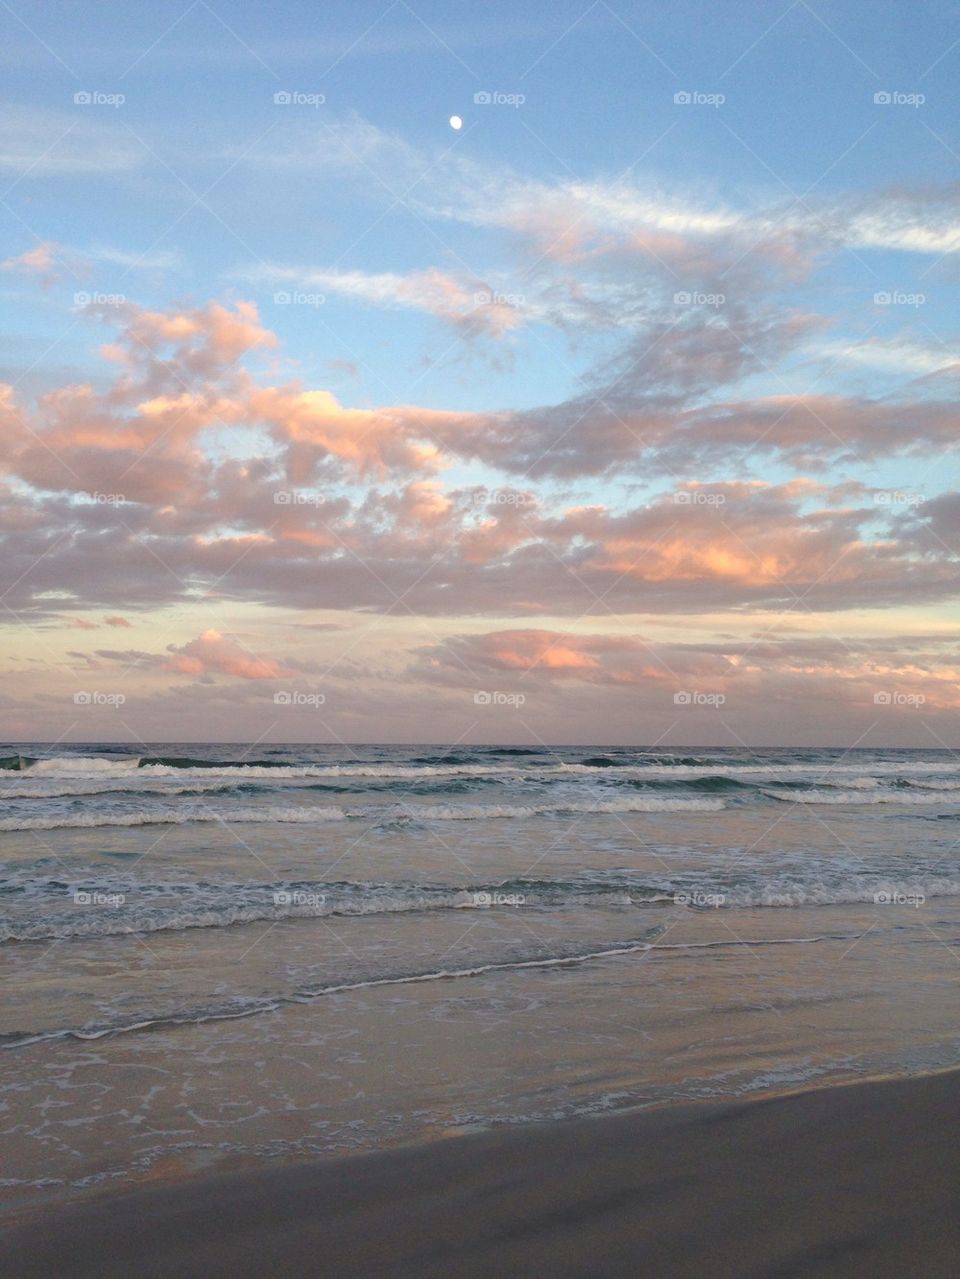 Beautiful East Coast beach, Florida 